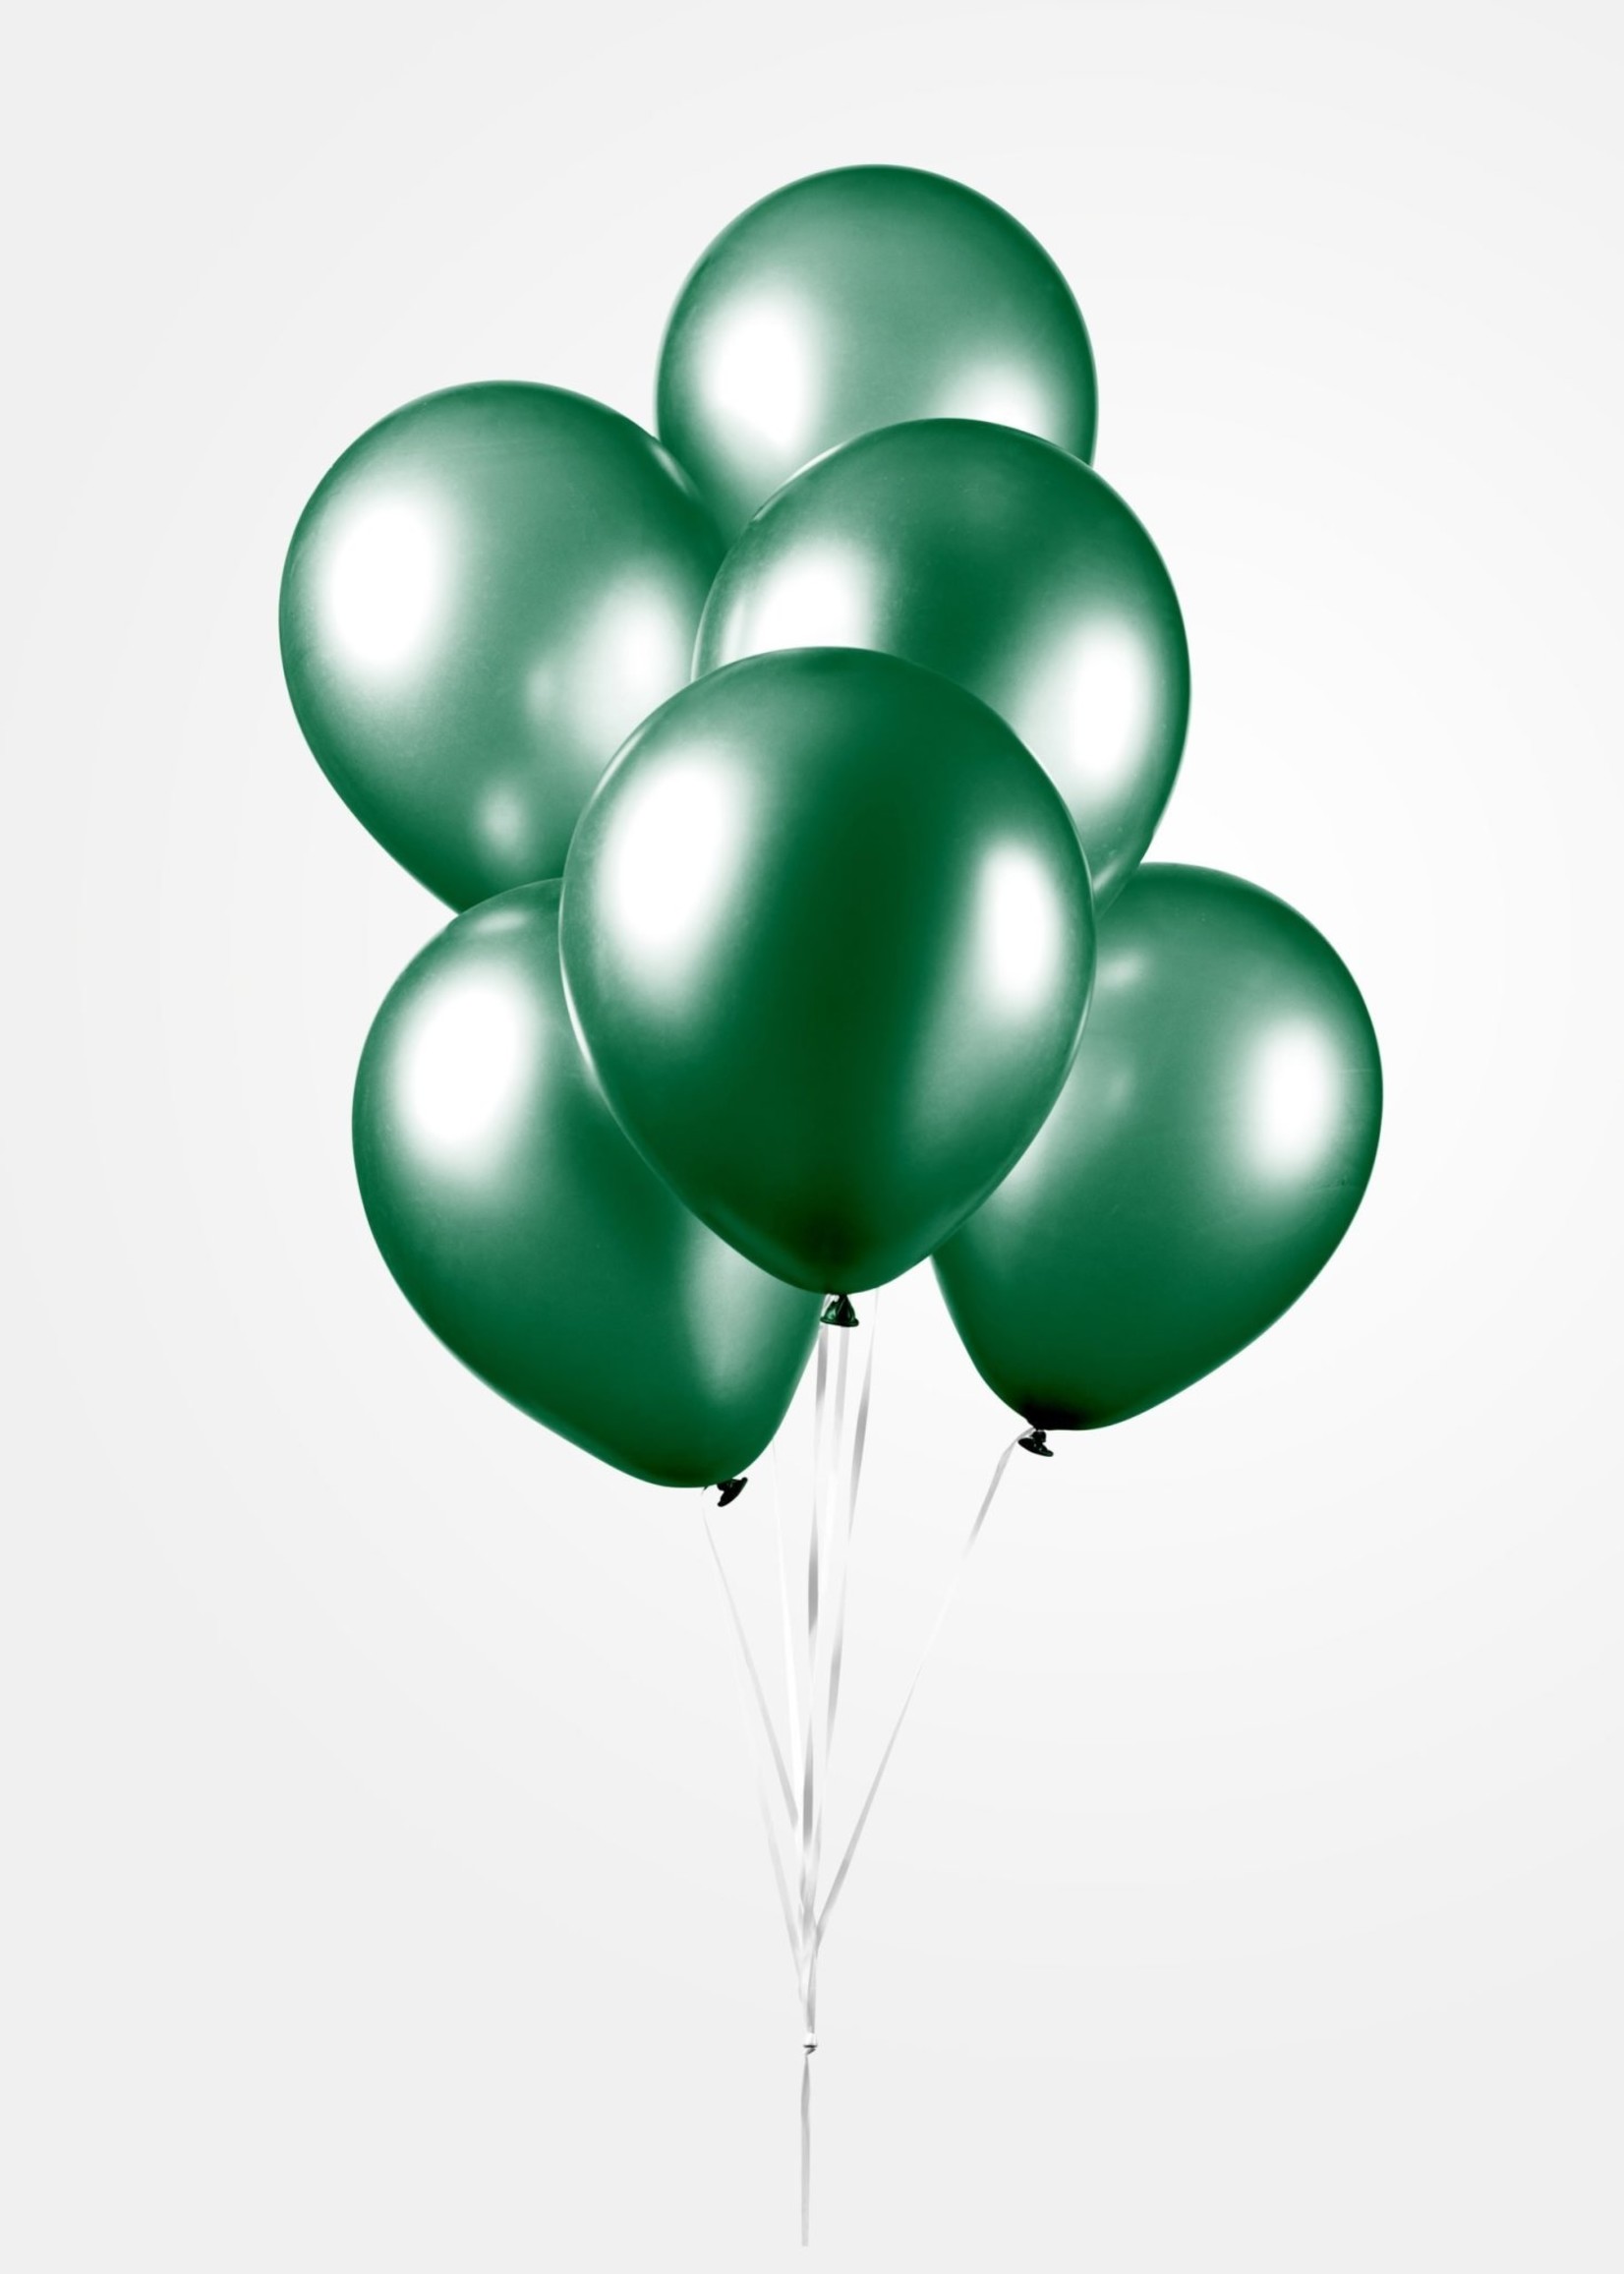 Feestkleding Breda Ballonnen Metallic groen 50 stuks